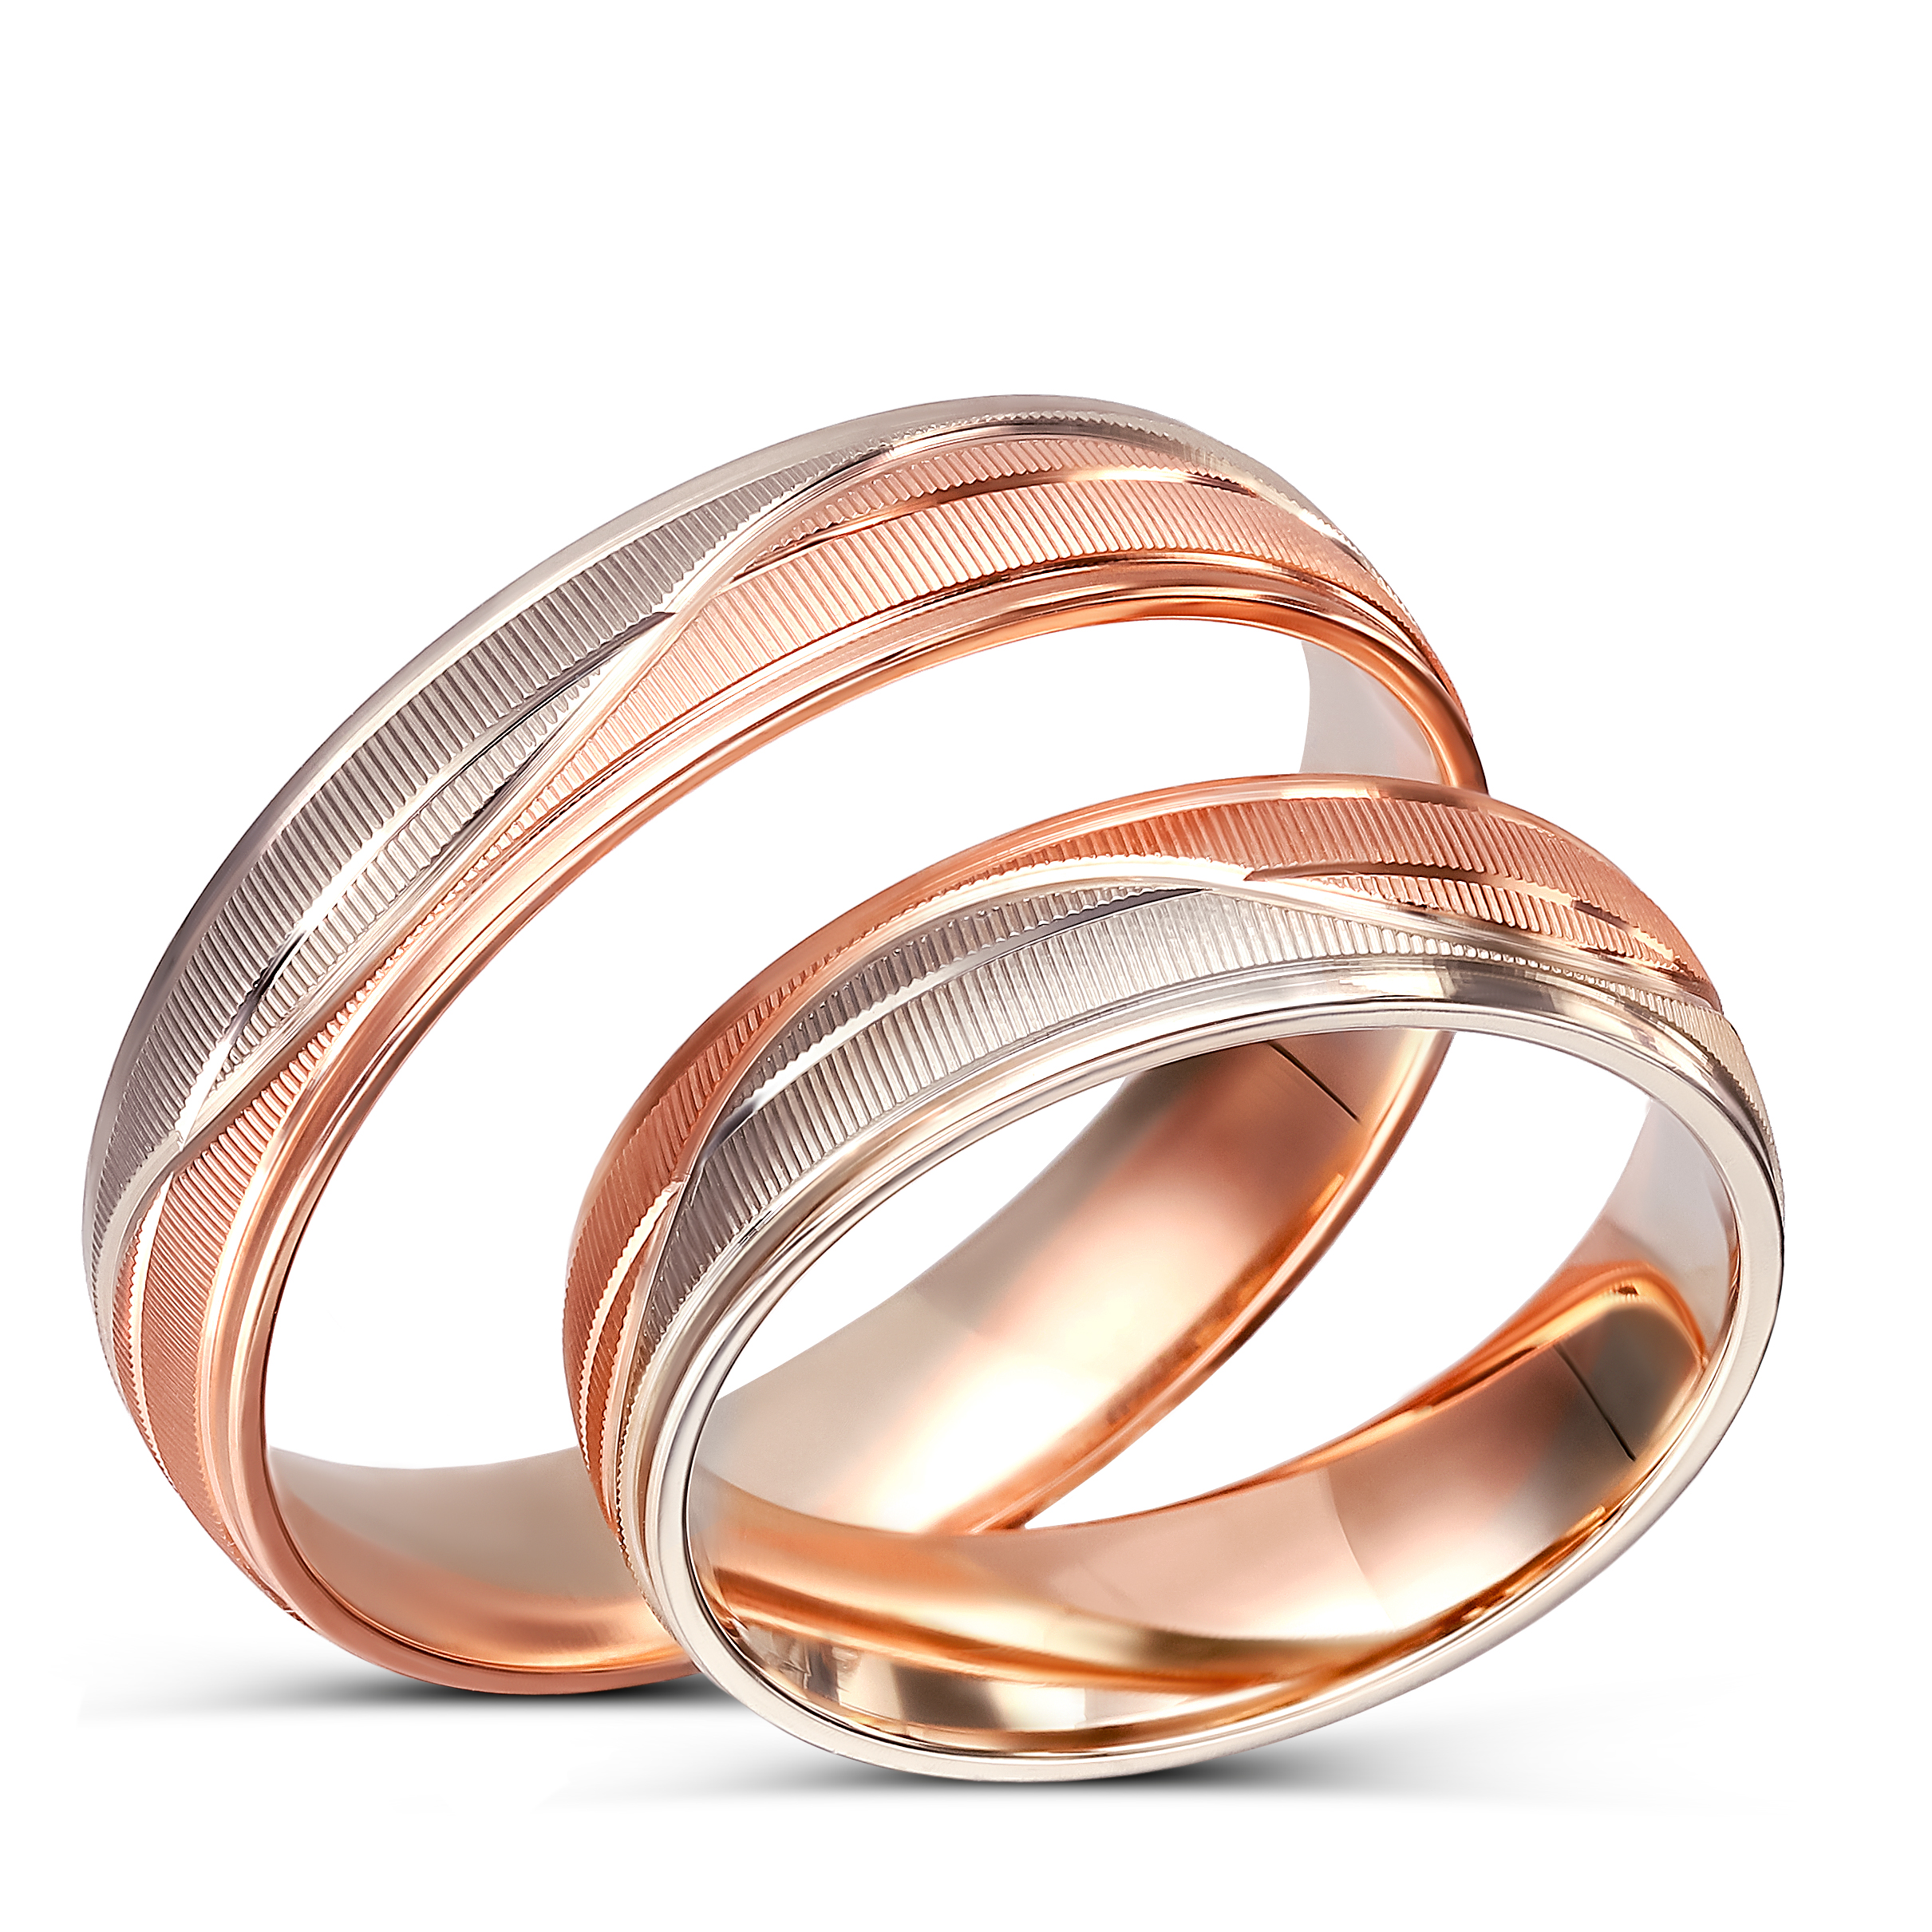 Obrączki ślubne z biało-różowego złota matowe półokrągłe OCH115O